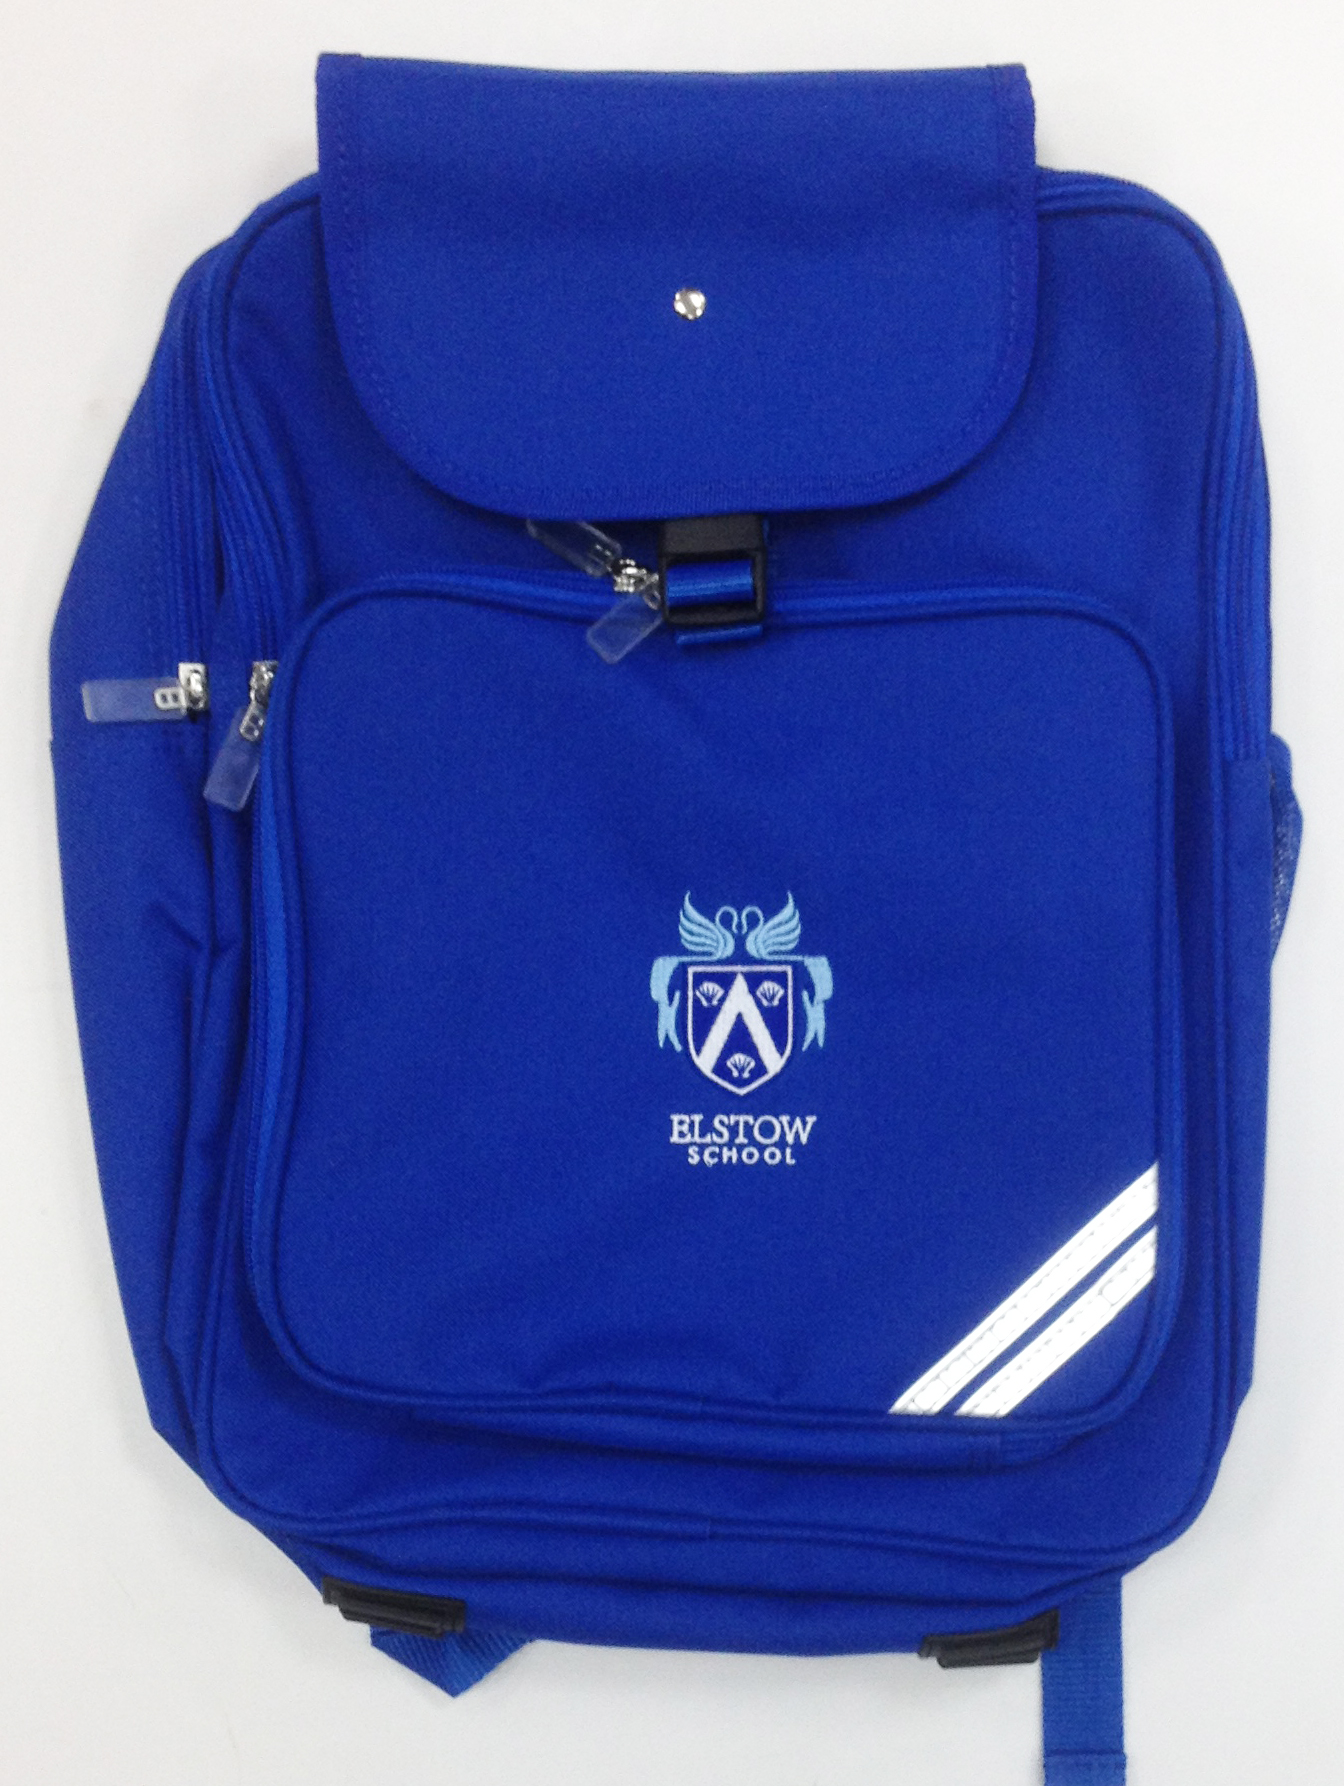 Elstow School Junior Backpack With Mesh Pocket - Josens Uniforms